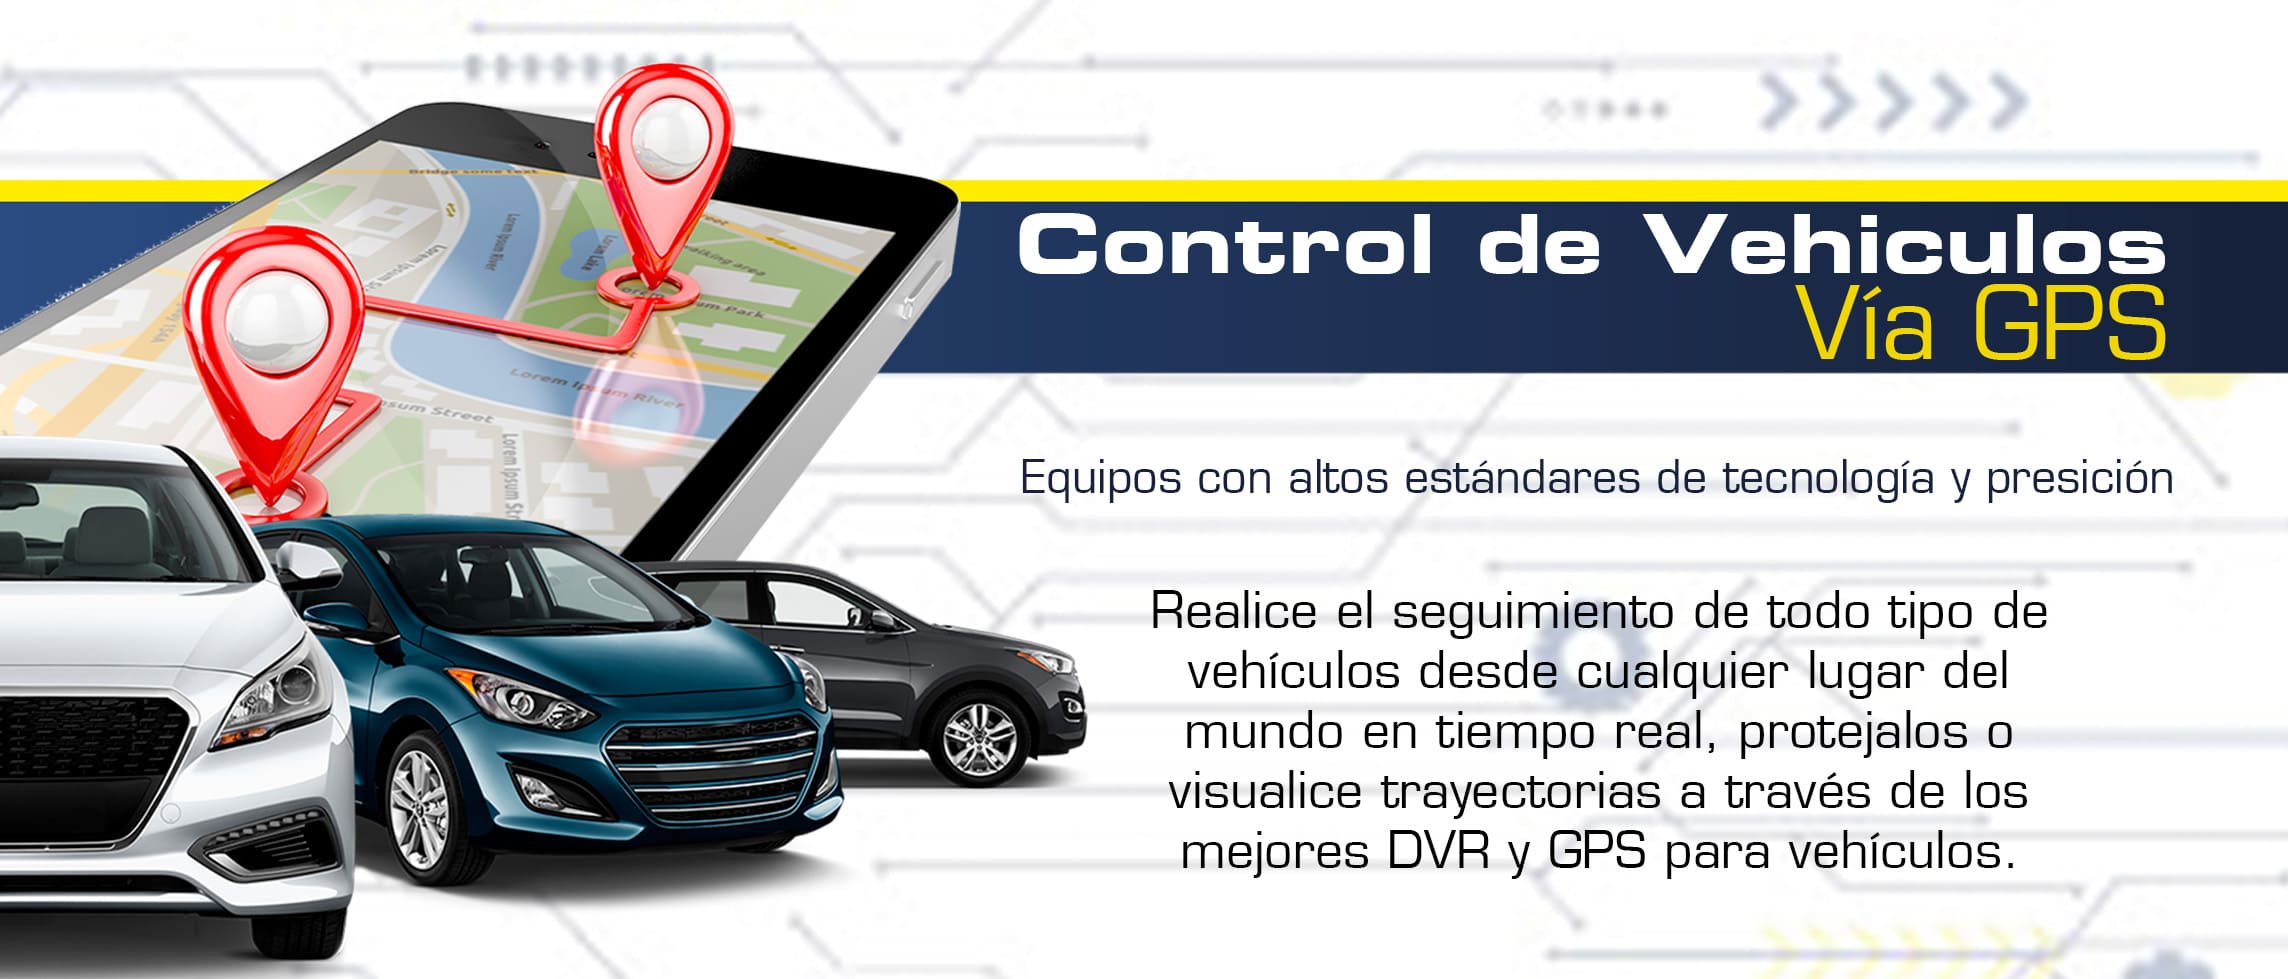 CONTROL DE VEHICULOS VIA GPS